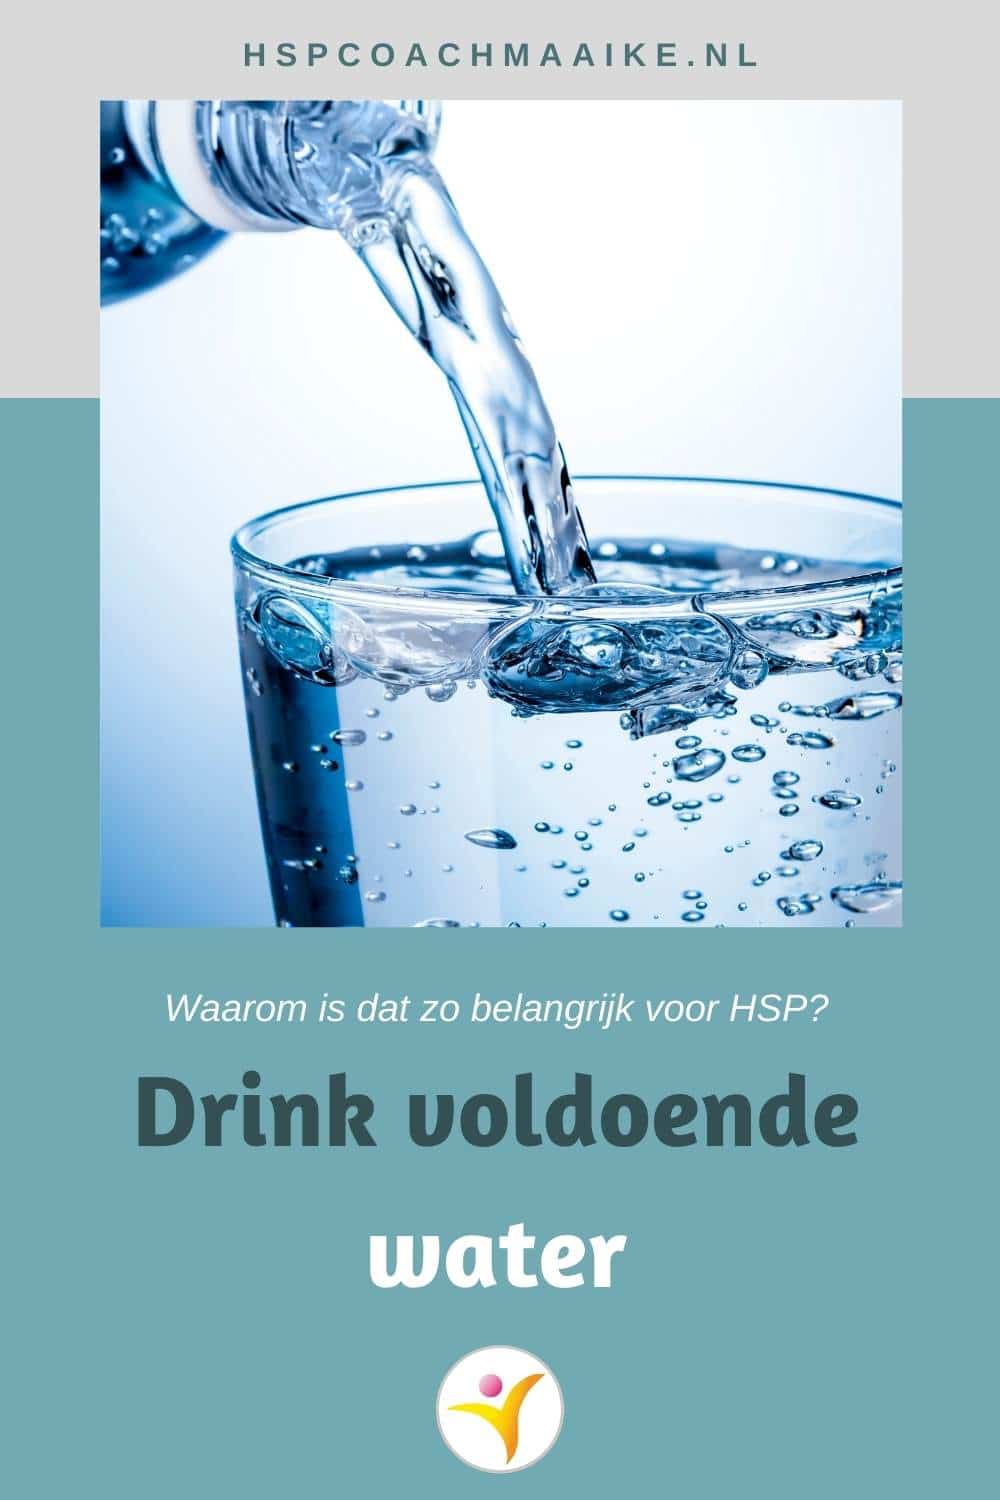 Waarom voldoende water voor HSP belangrijk is